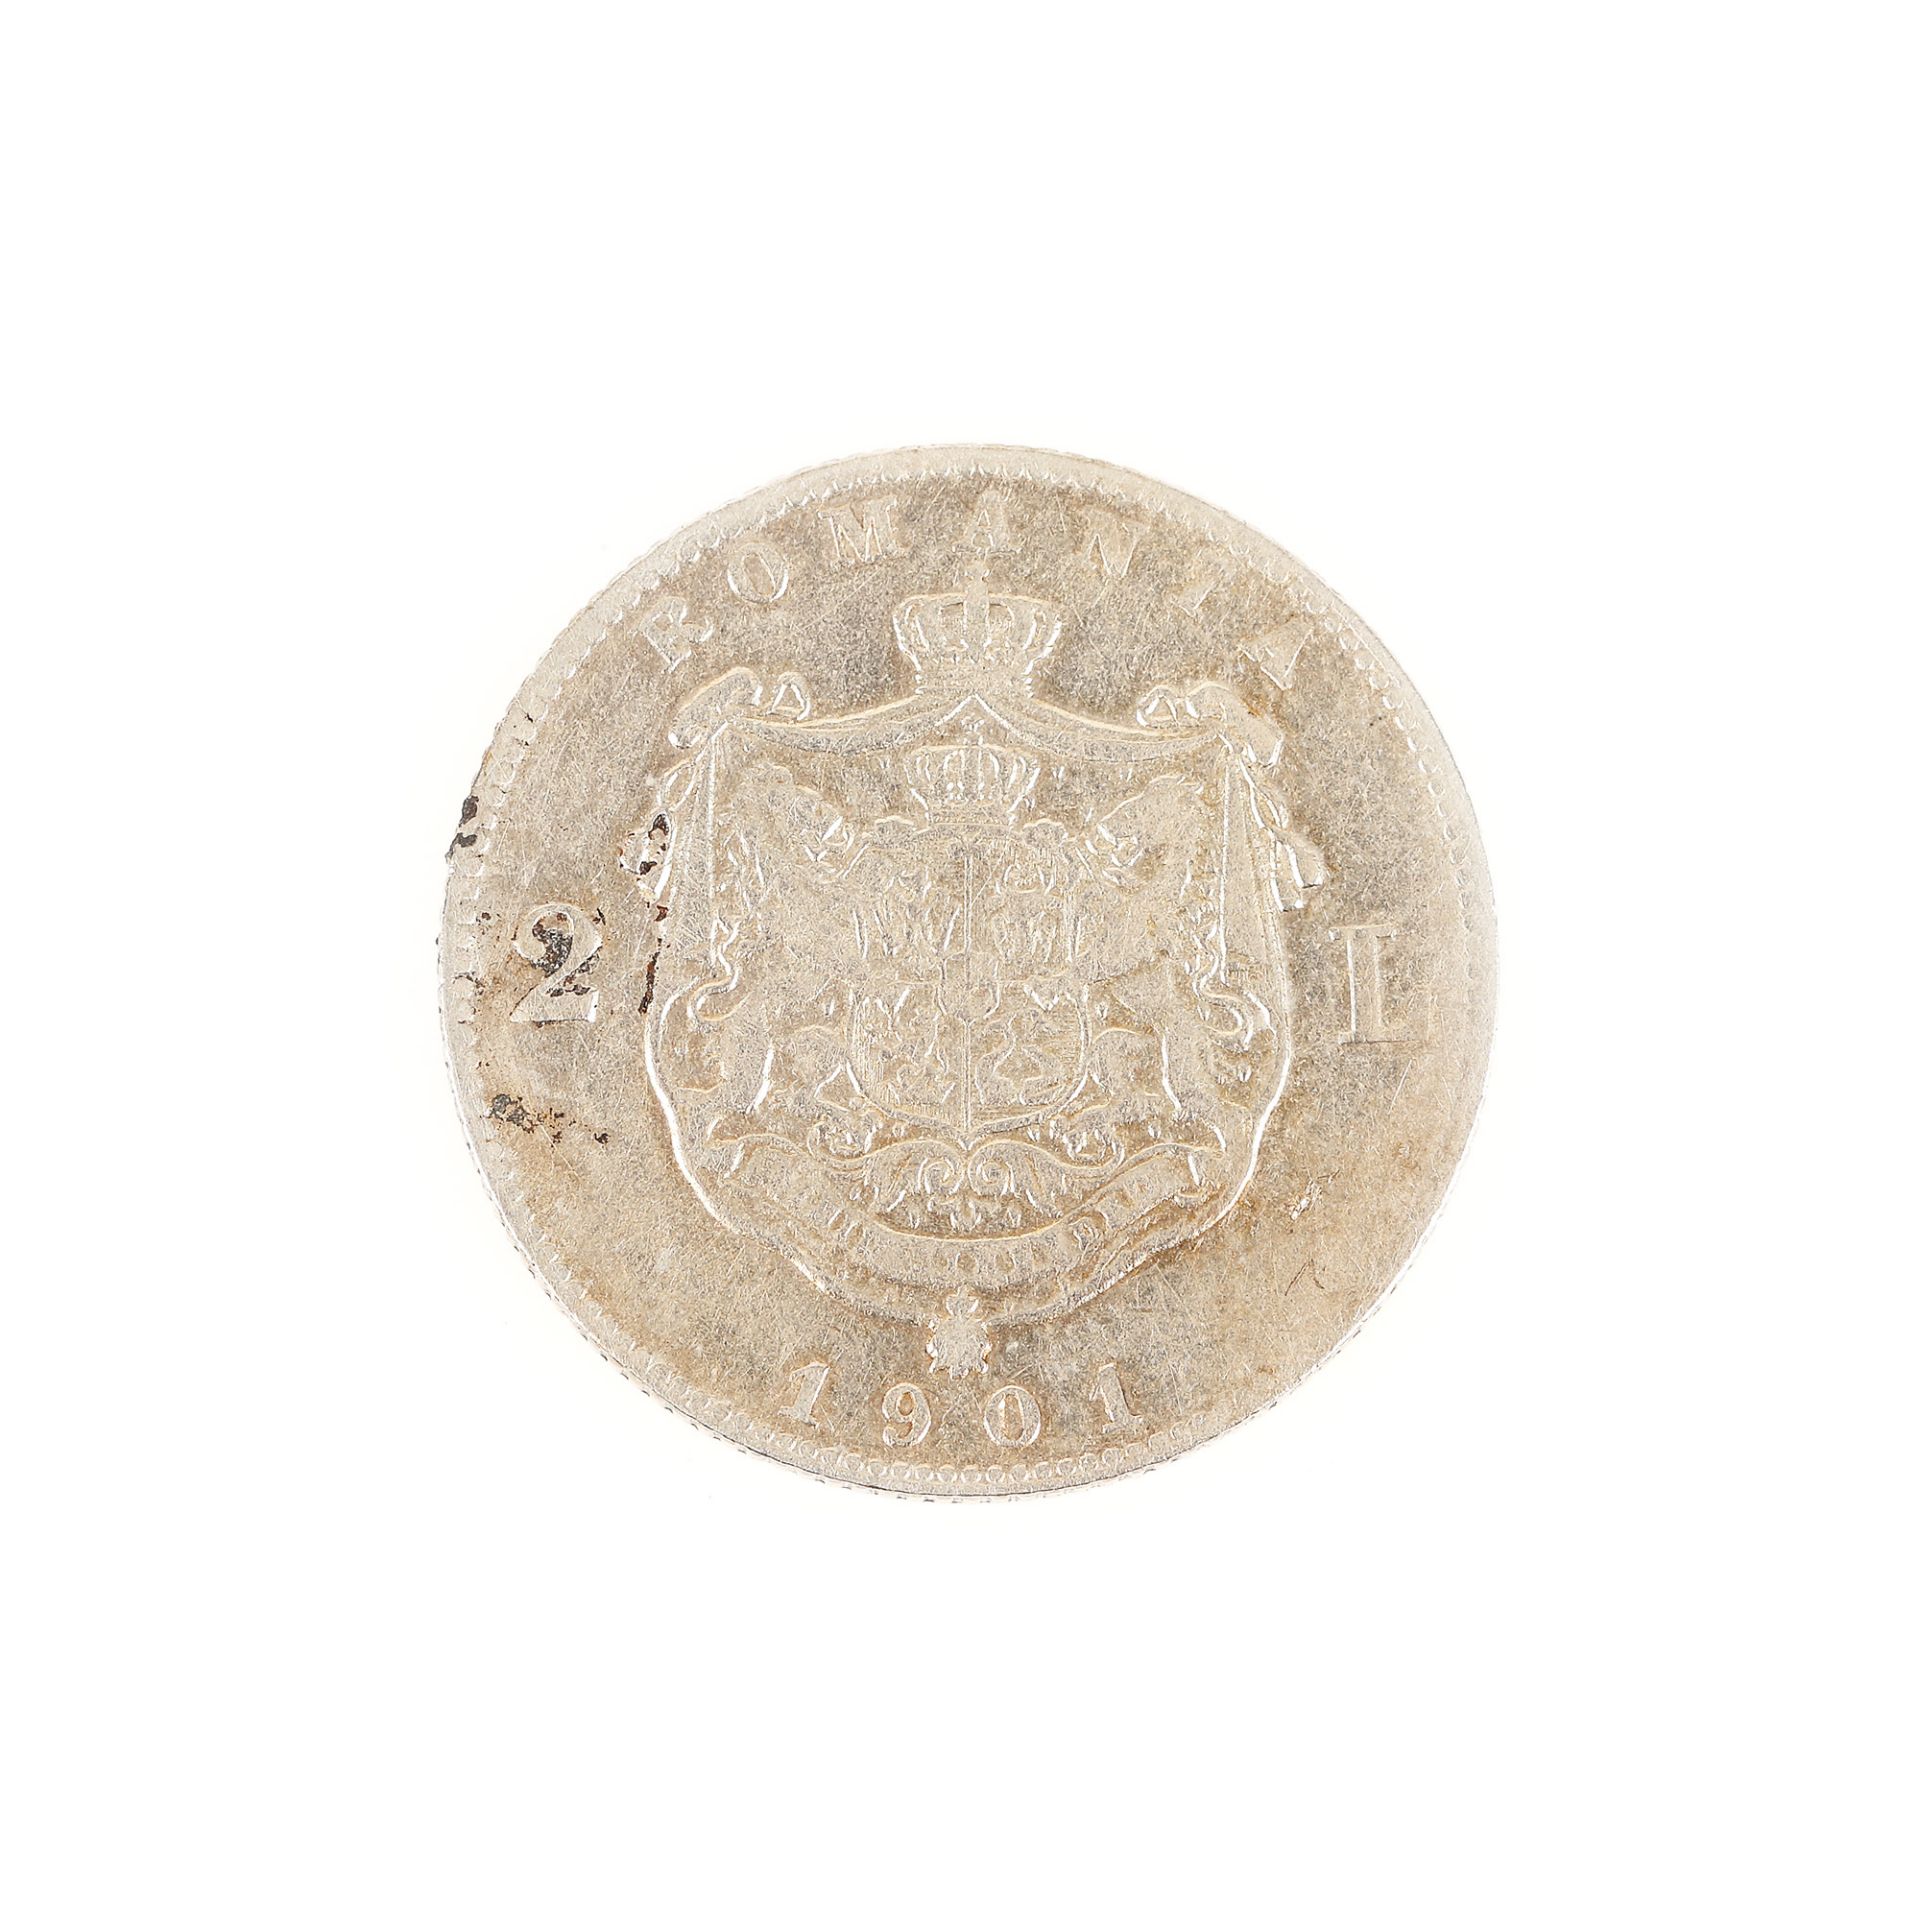 2 Lei 1901 coin, silver